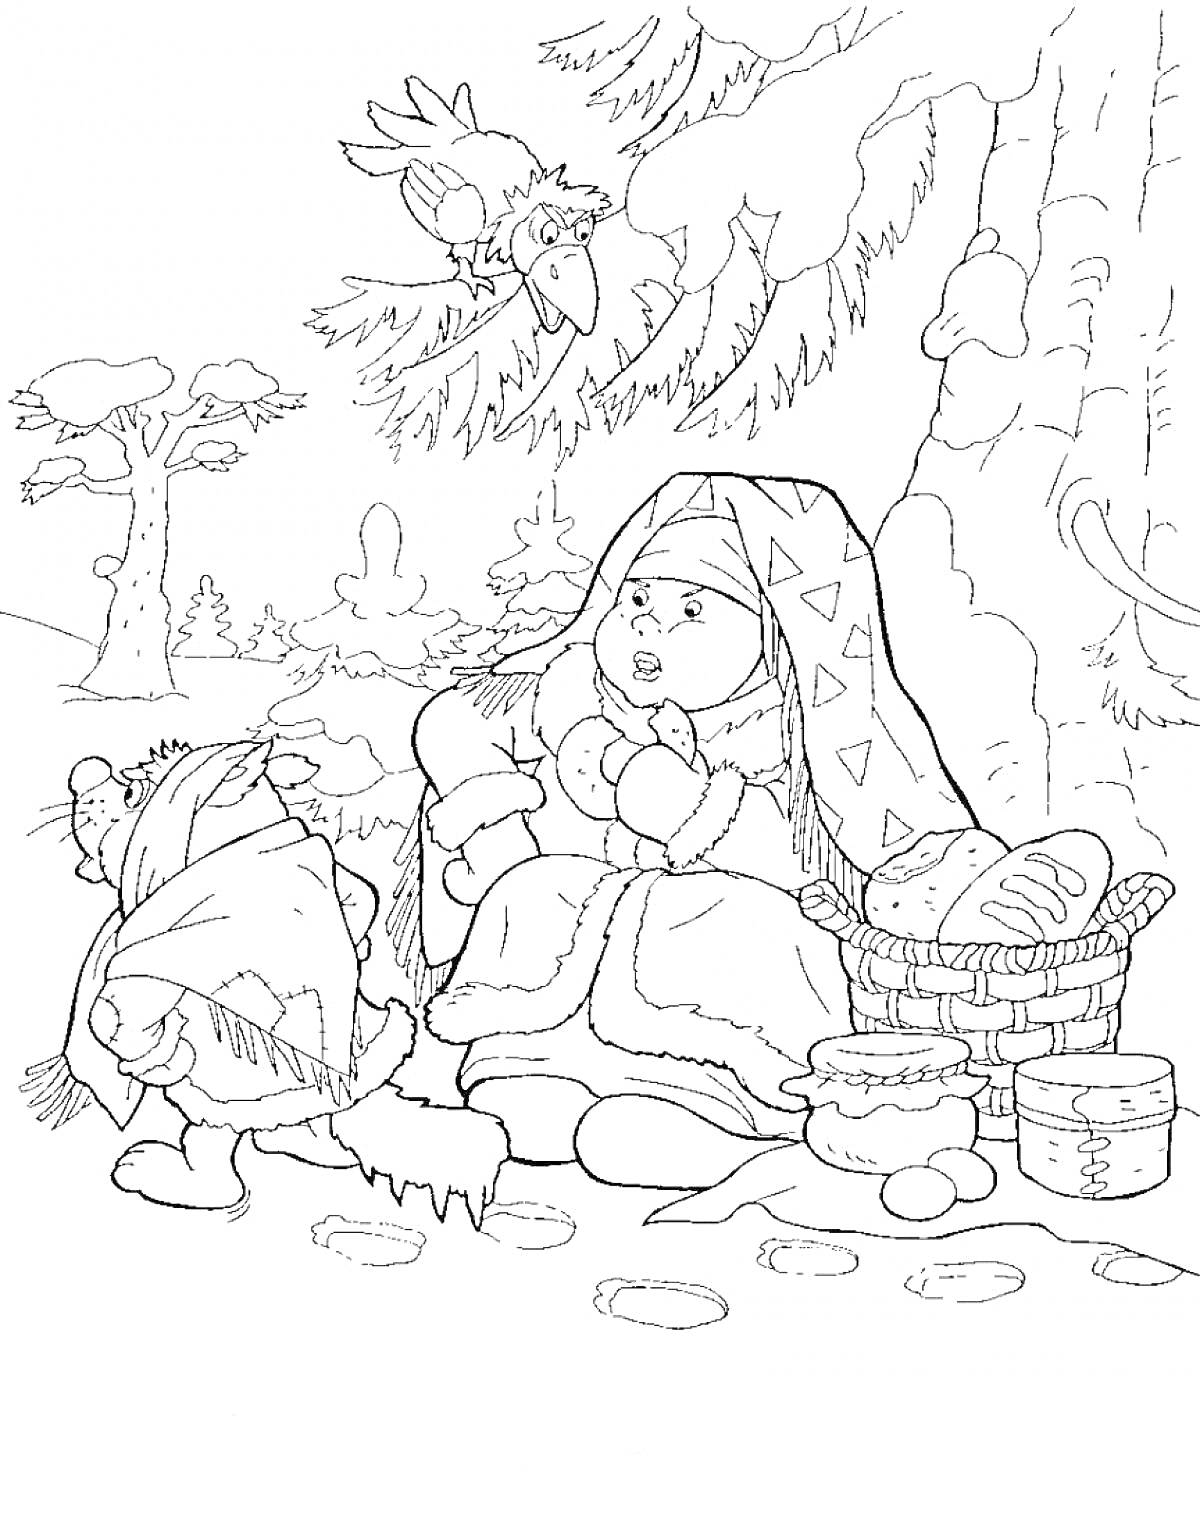 Девушка в зимней одежде под деревом с корзиной, ребёнок с шарфом, птица на ветке и зимний лес на заднем плане